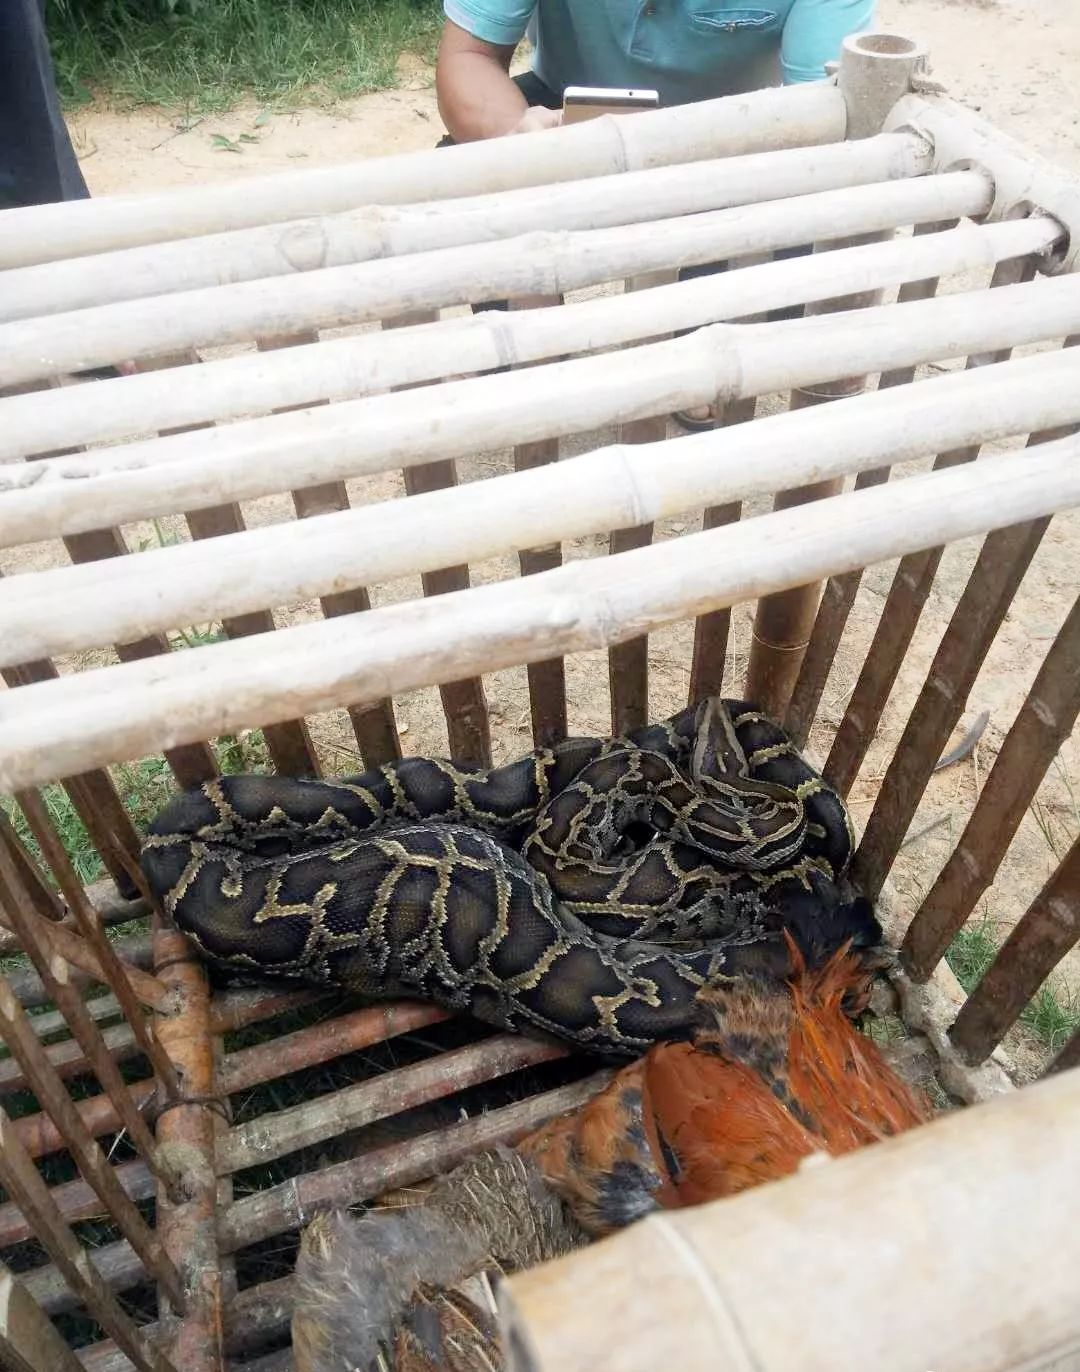 大埔一村民家鸡笼里发现一条大蟒蛇!